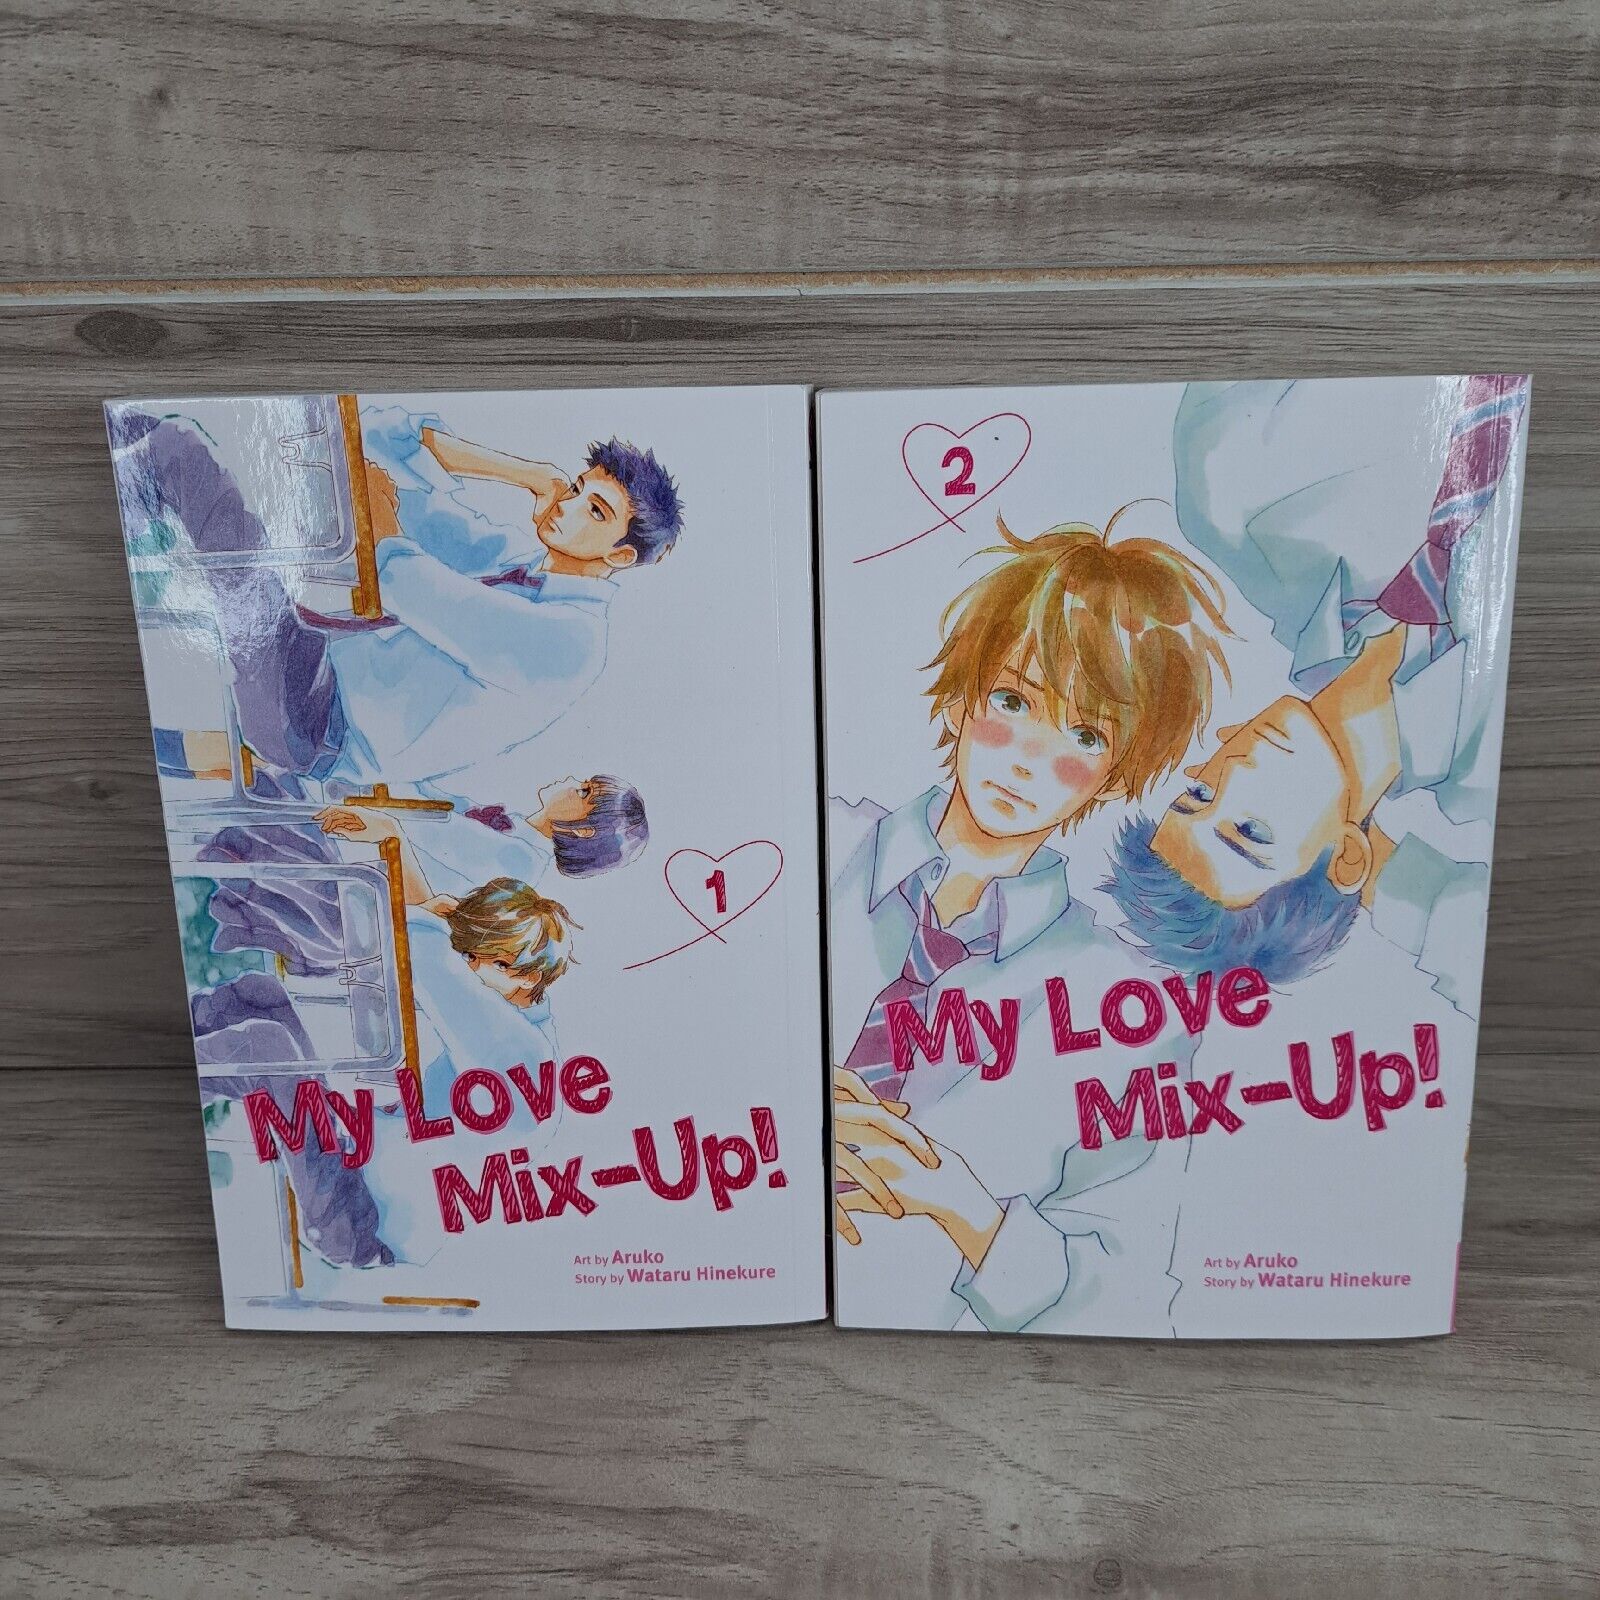 My Love Mix-Up Vol. 1 - 2 Manga art by aruko story  by wataru hinekure